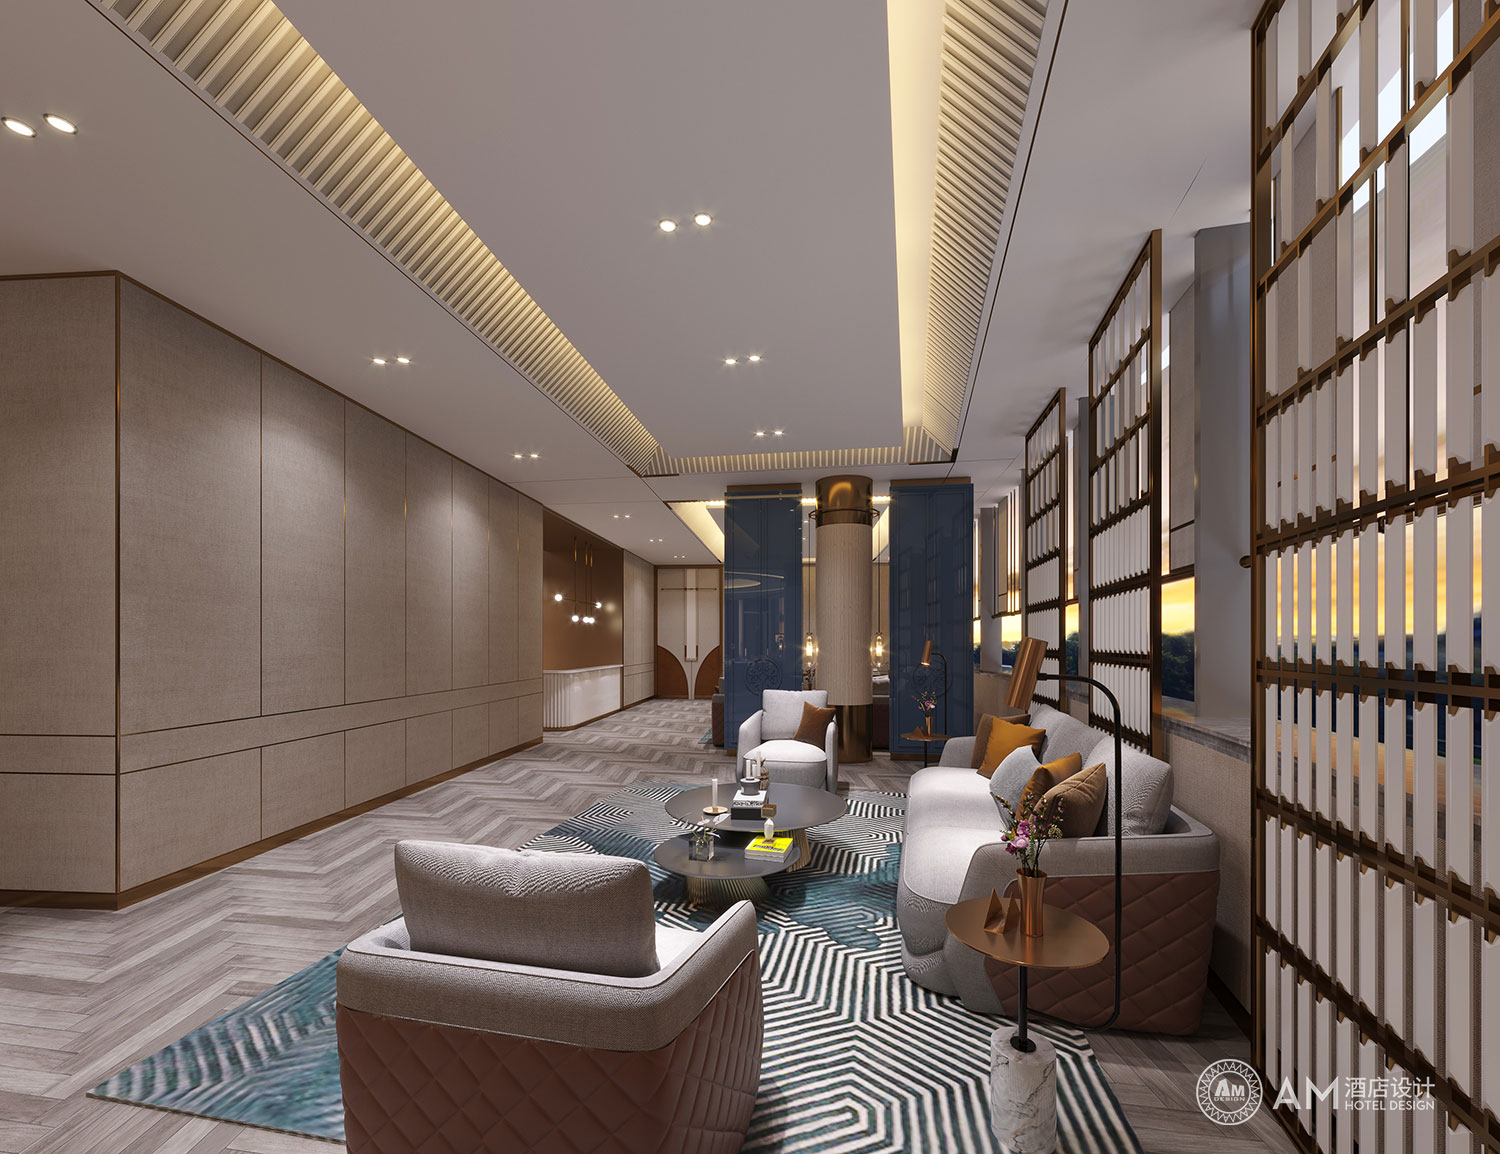 AM DESIGN | Design of banquet hall rest area of Cangzhou Bohai Hotel